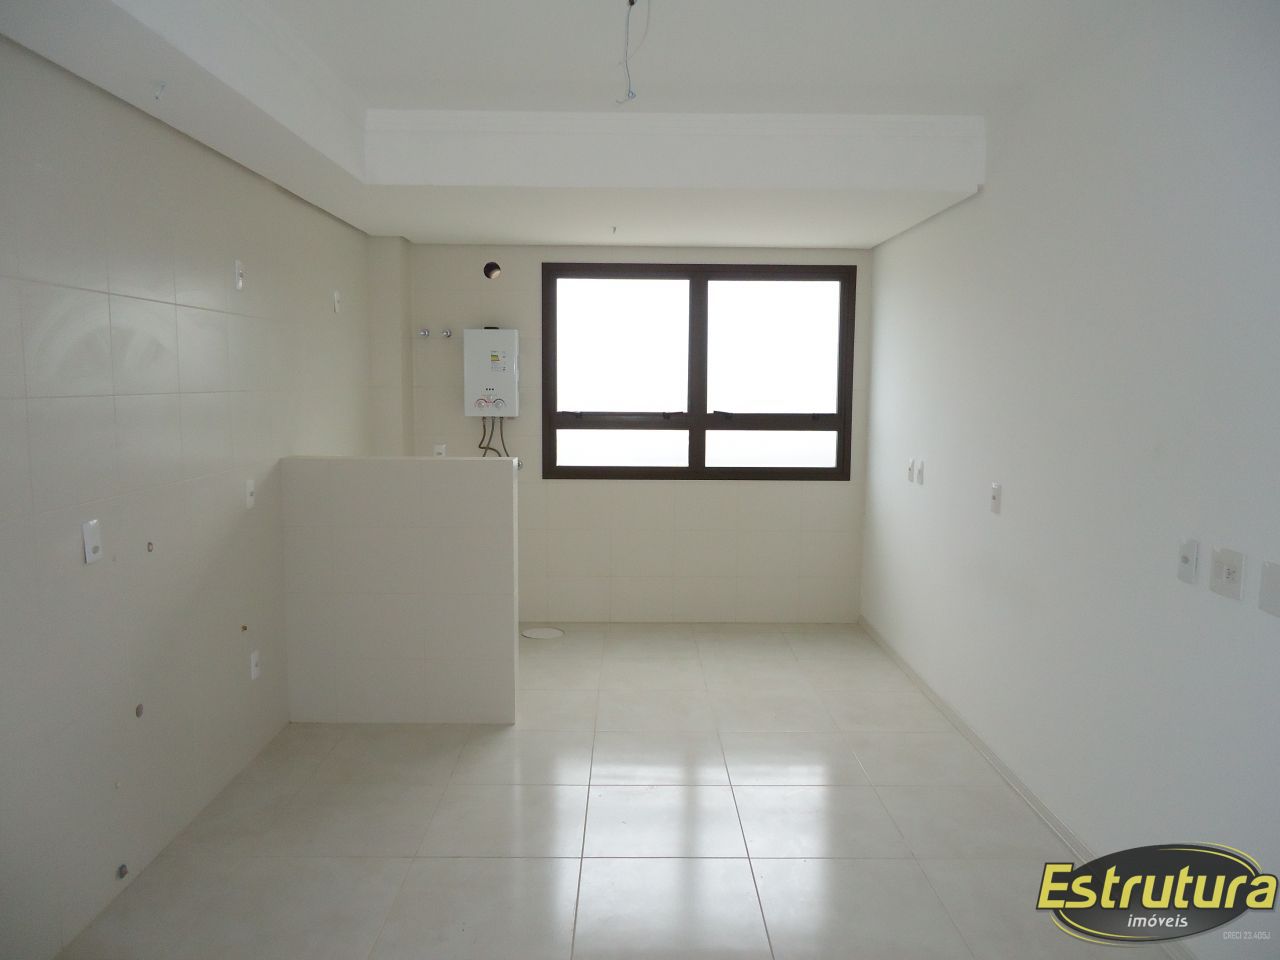 Apartamento com 3 Dormitórios à venda, 117 m² por R$ 610.000,00